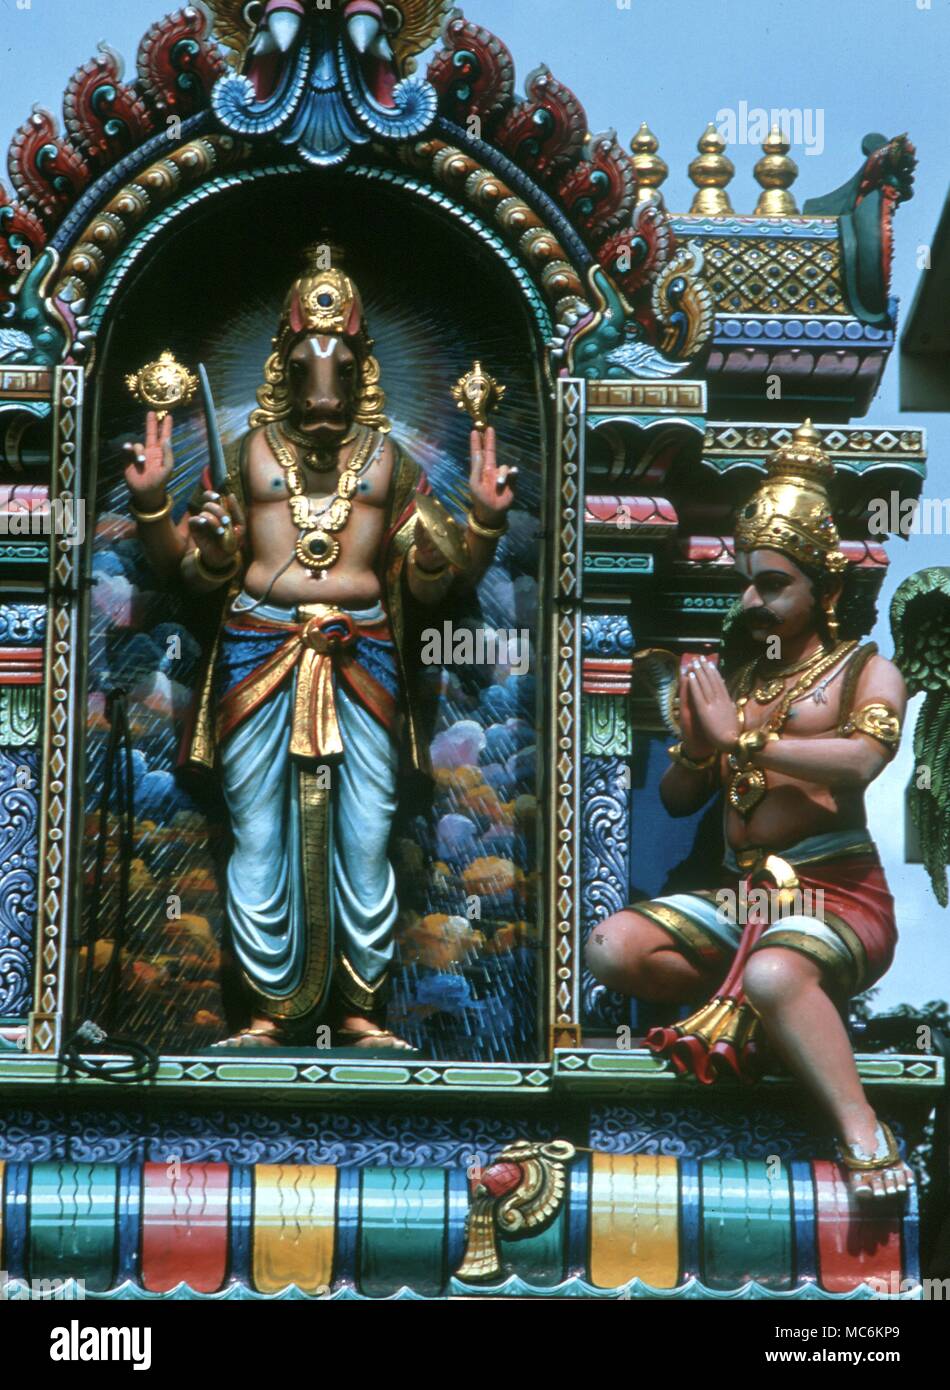 Hindu Mythology. Narasimha, the man-lion, one of the avatars of Krishna. Hindu temple in Singapore Stock Photo